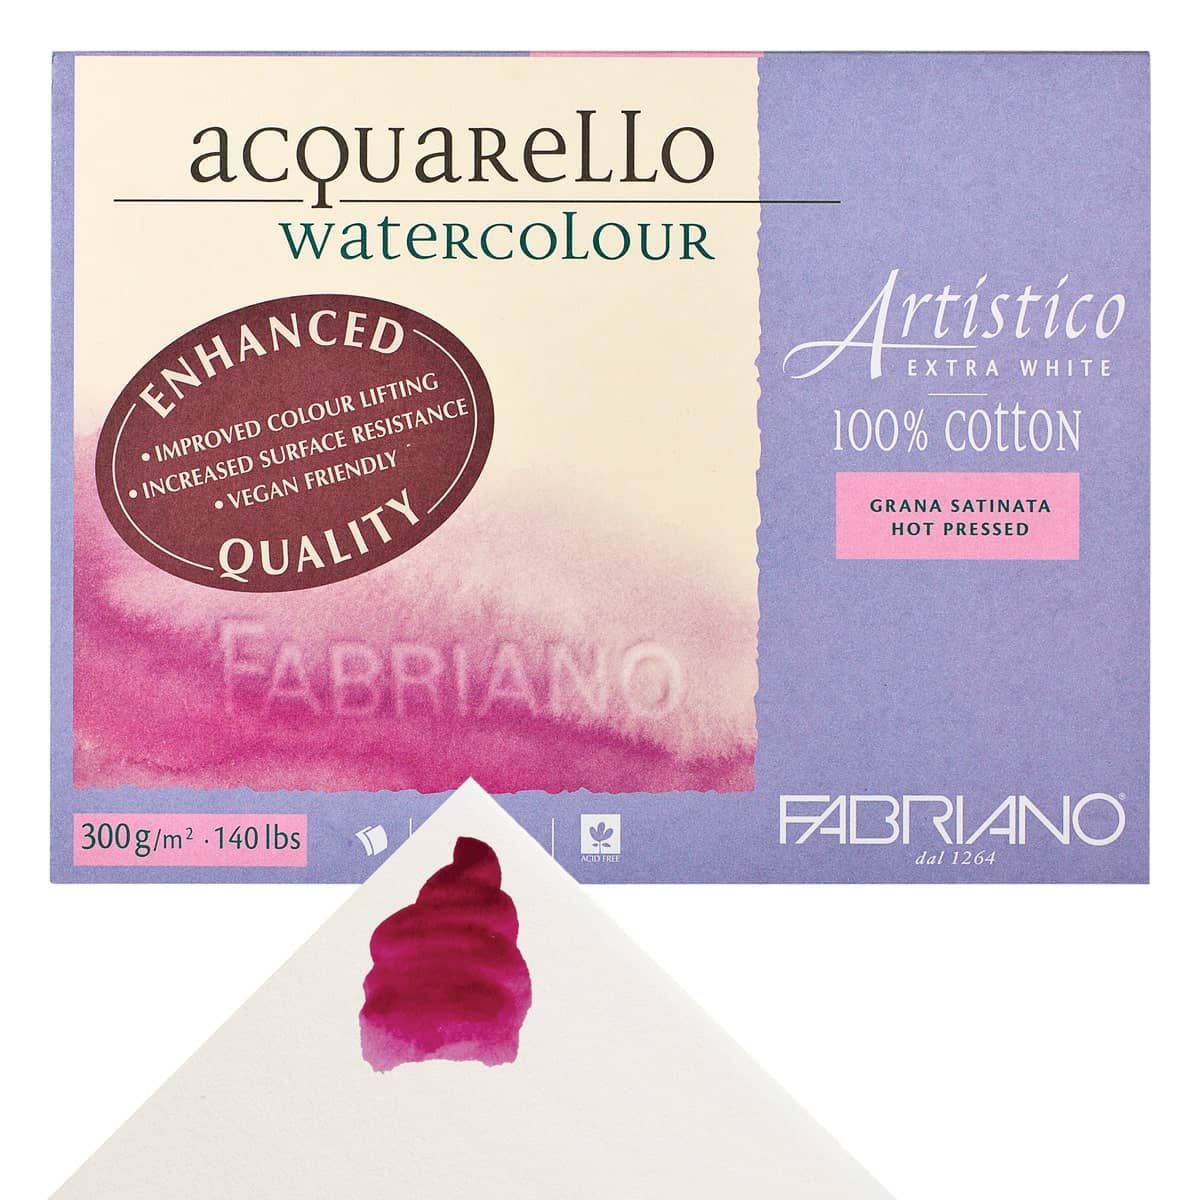 Fabriano Artistico Watercolor Blocks - Extra White & Traditional White